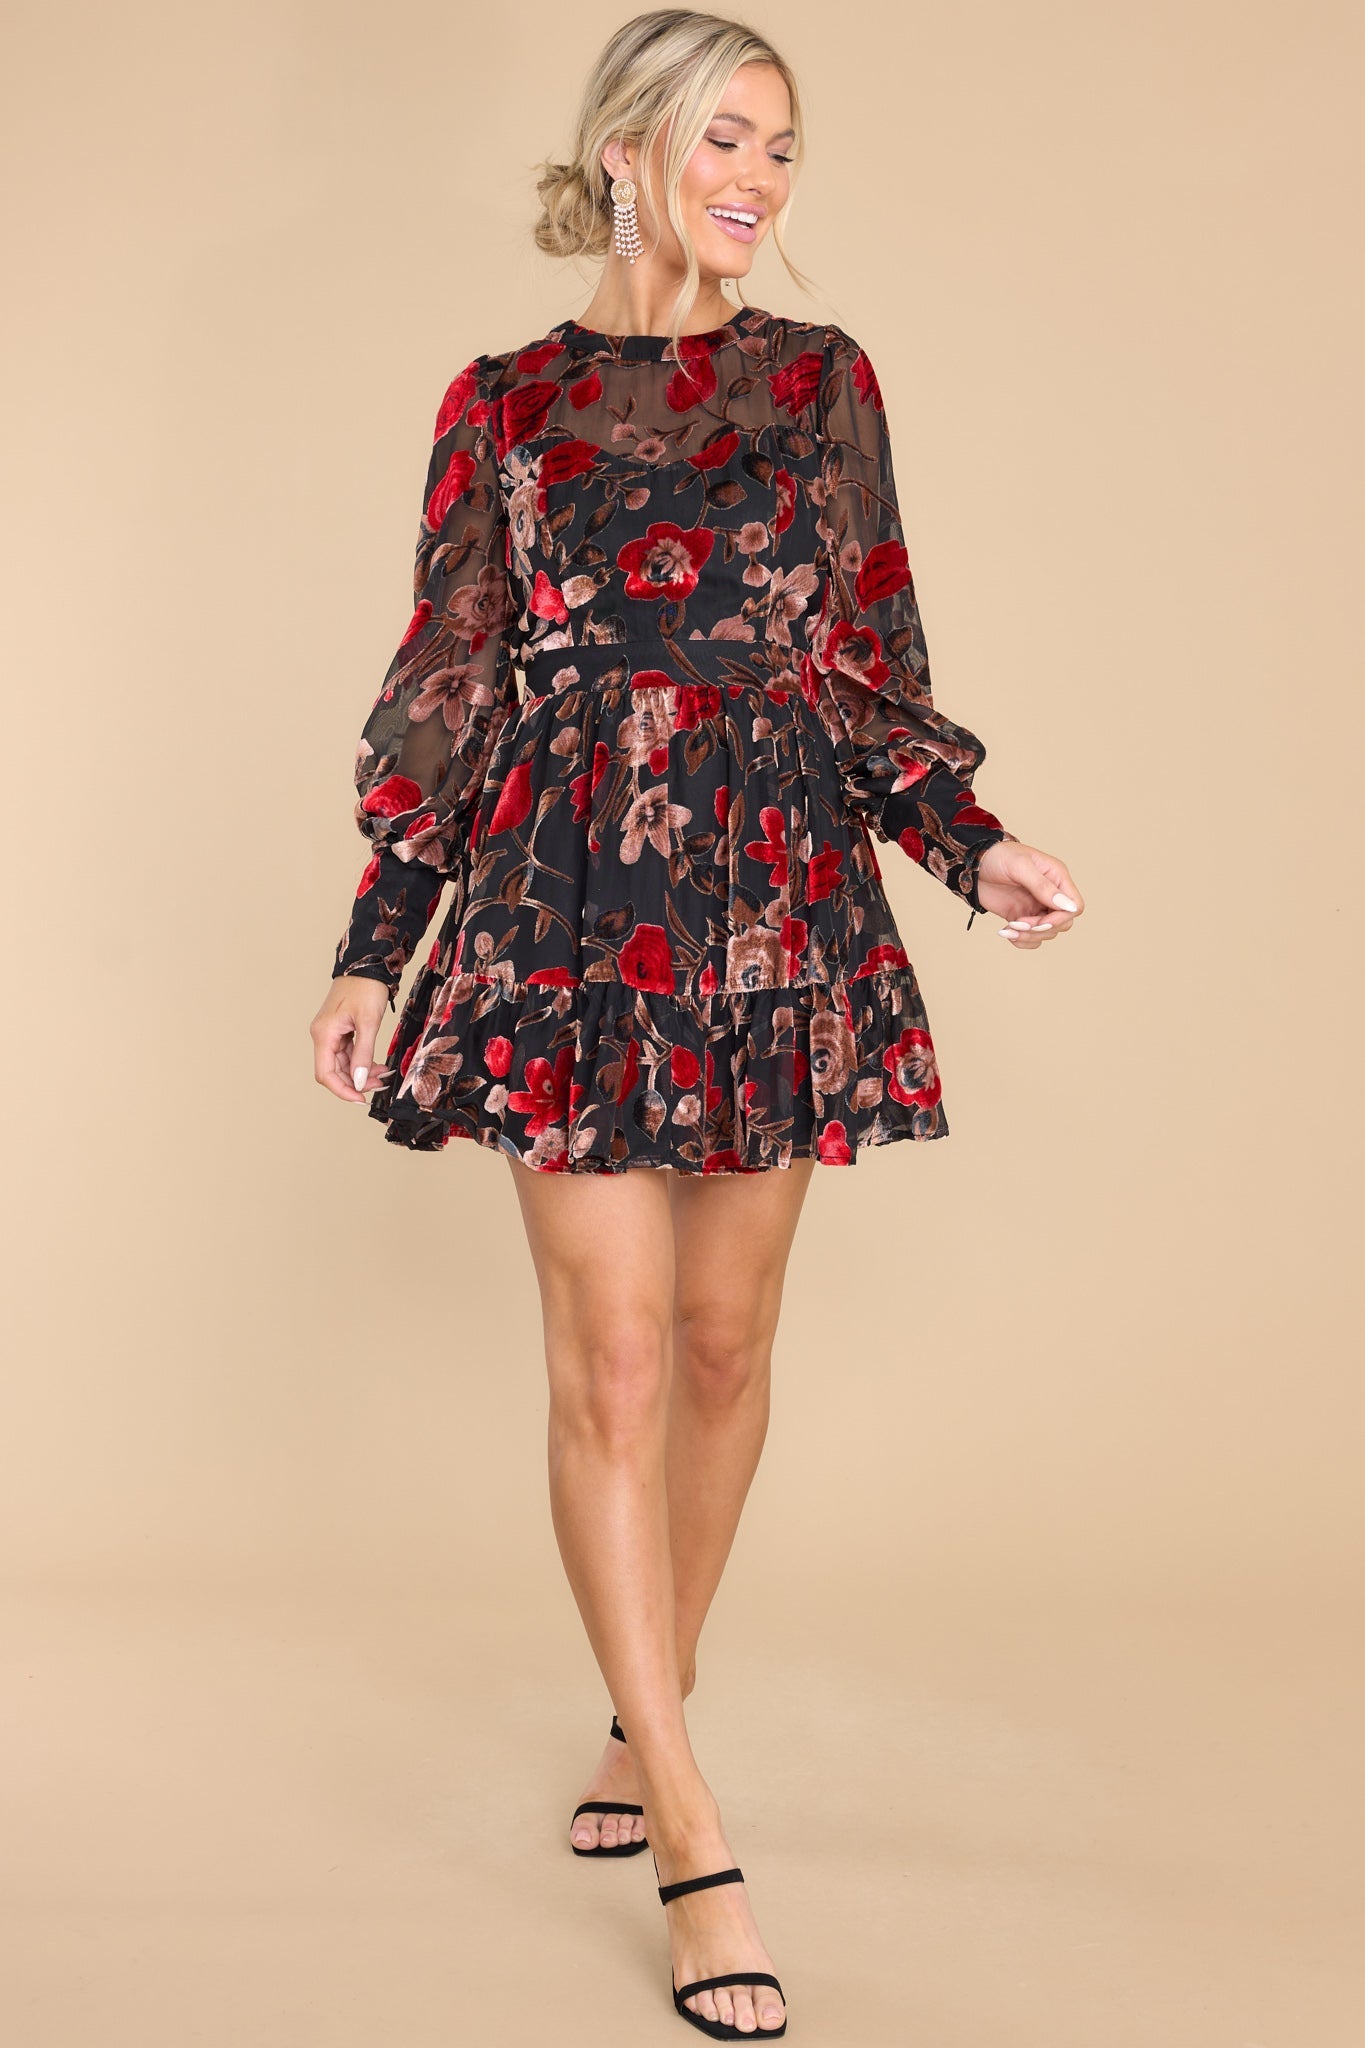 Alluring Blooms Black Floral Print Velvet Dress - Red Dress